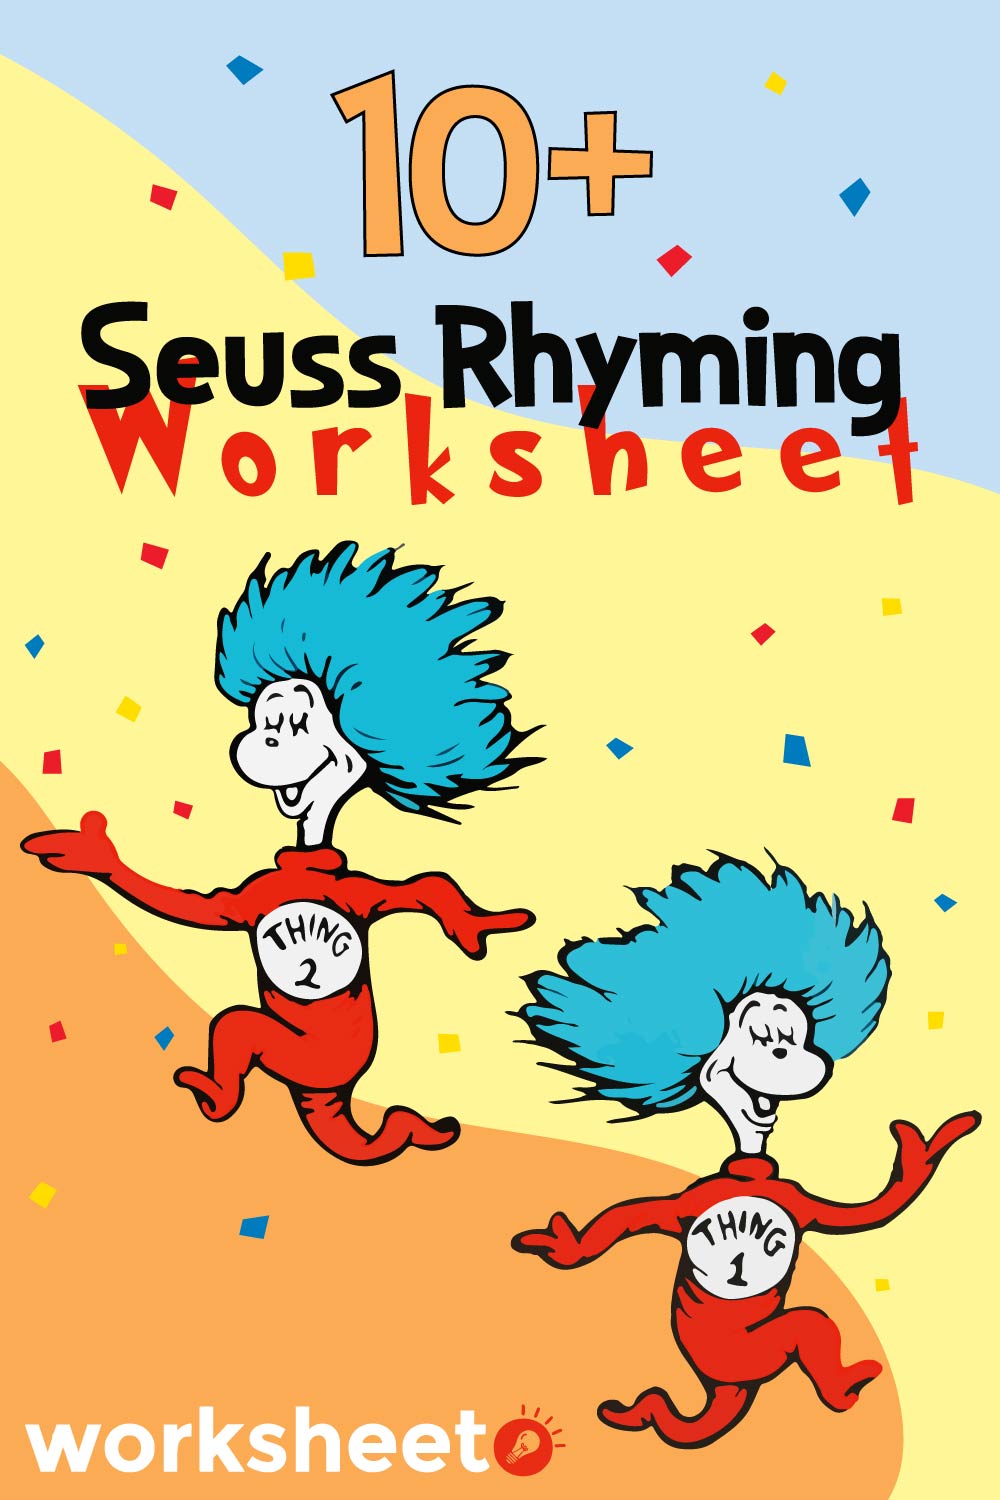 Seuss Rhyming Worksheet